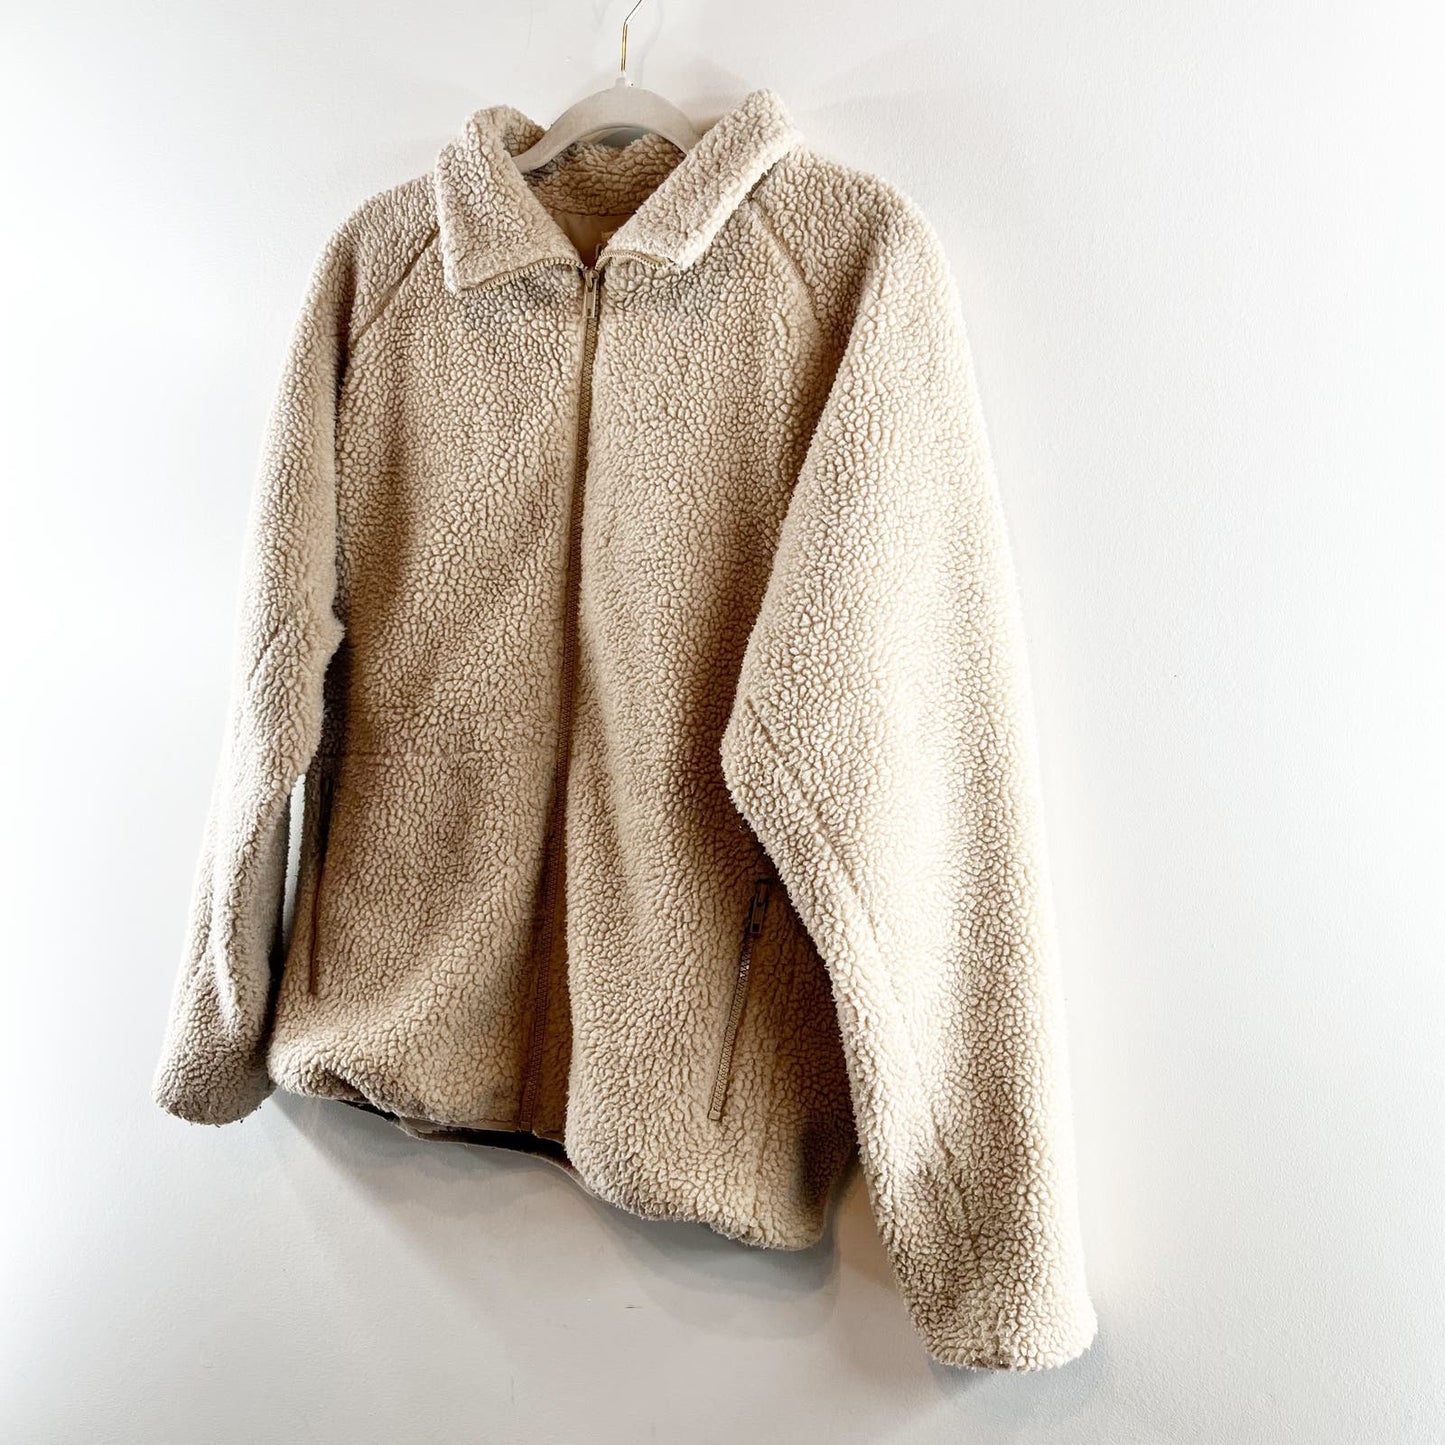 Brandy Melville John Galt Willow Full Zip Teddy Sherpa Jacket Beige One Size